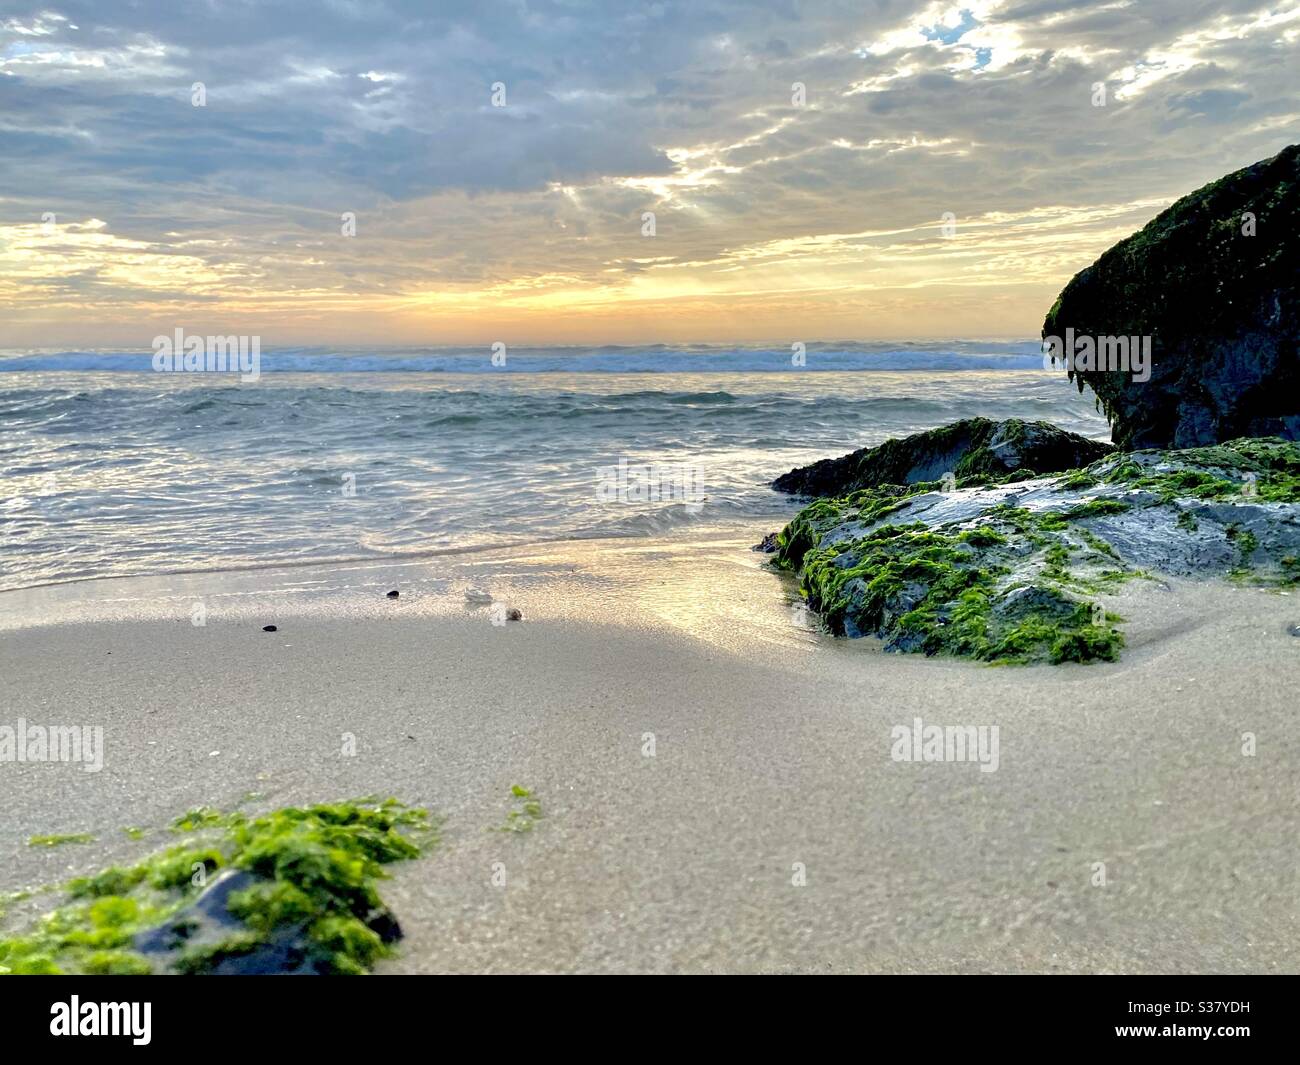 Bellissima spiaggia sabbiosa con oceano e rocce ricoperte di alghe Foto Stock